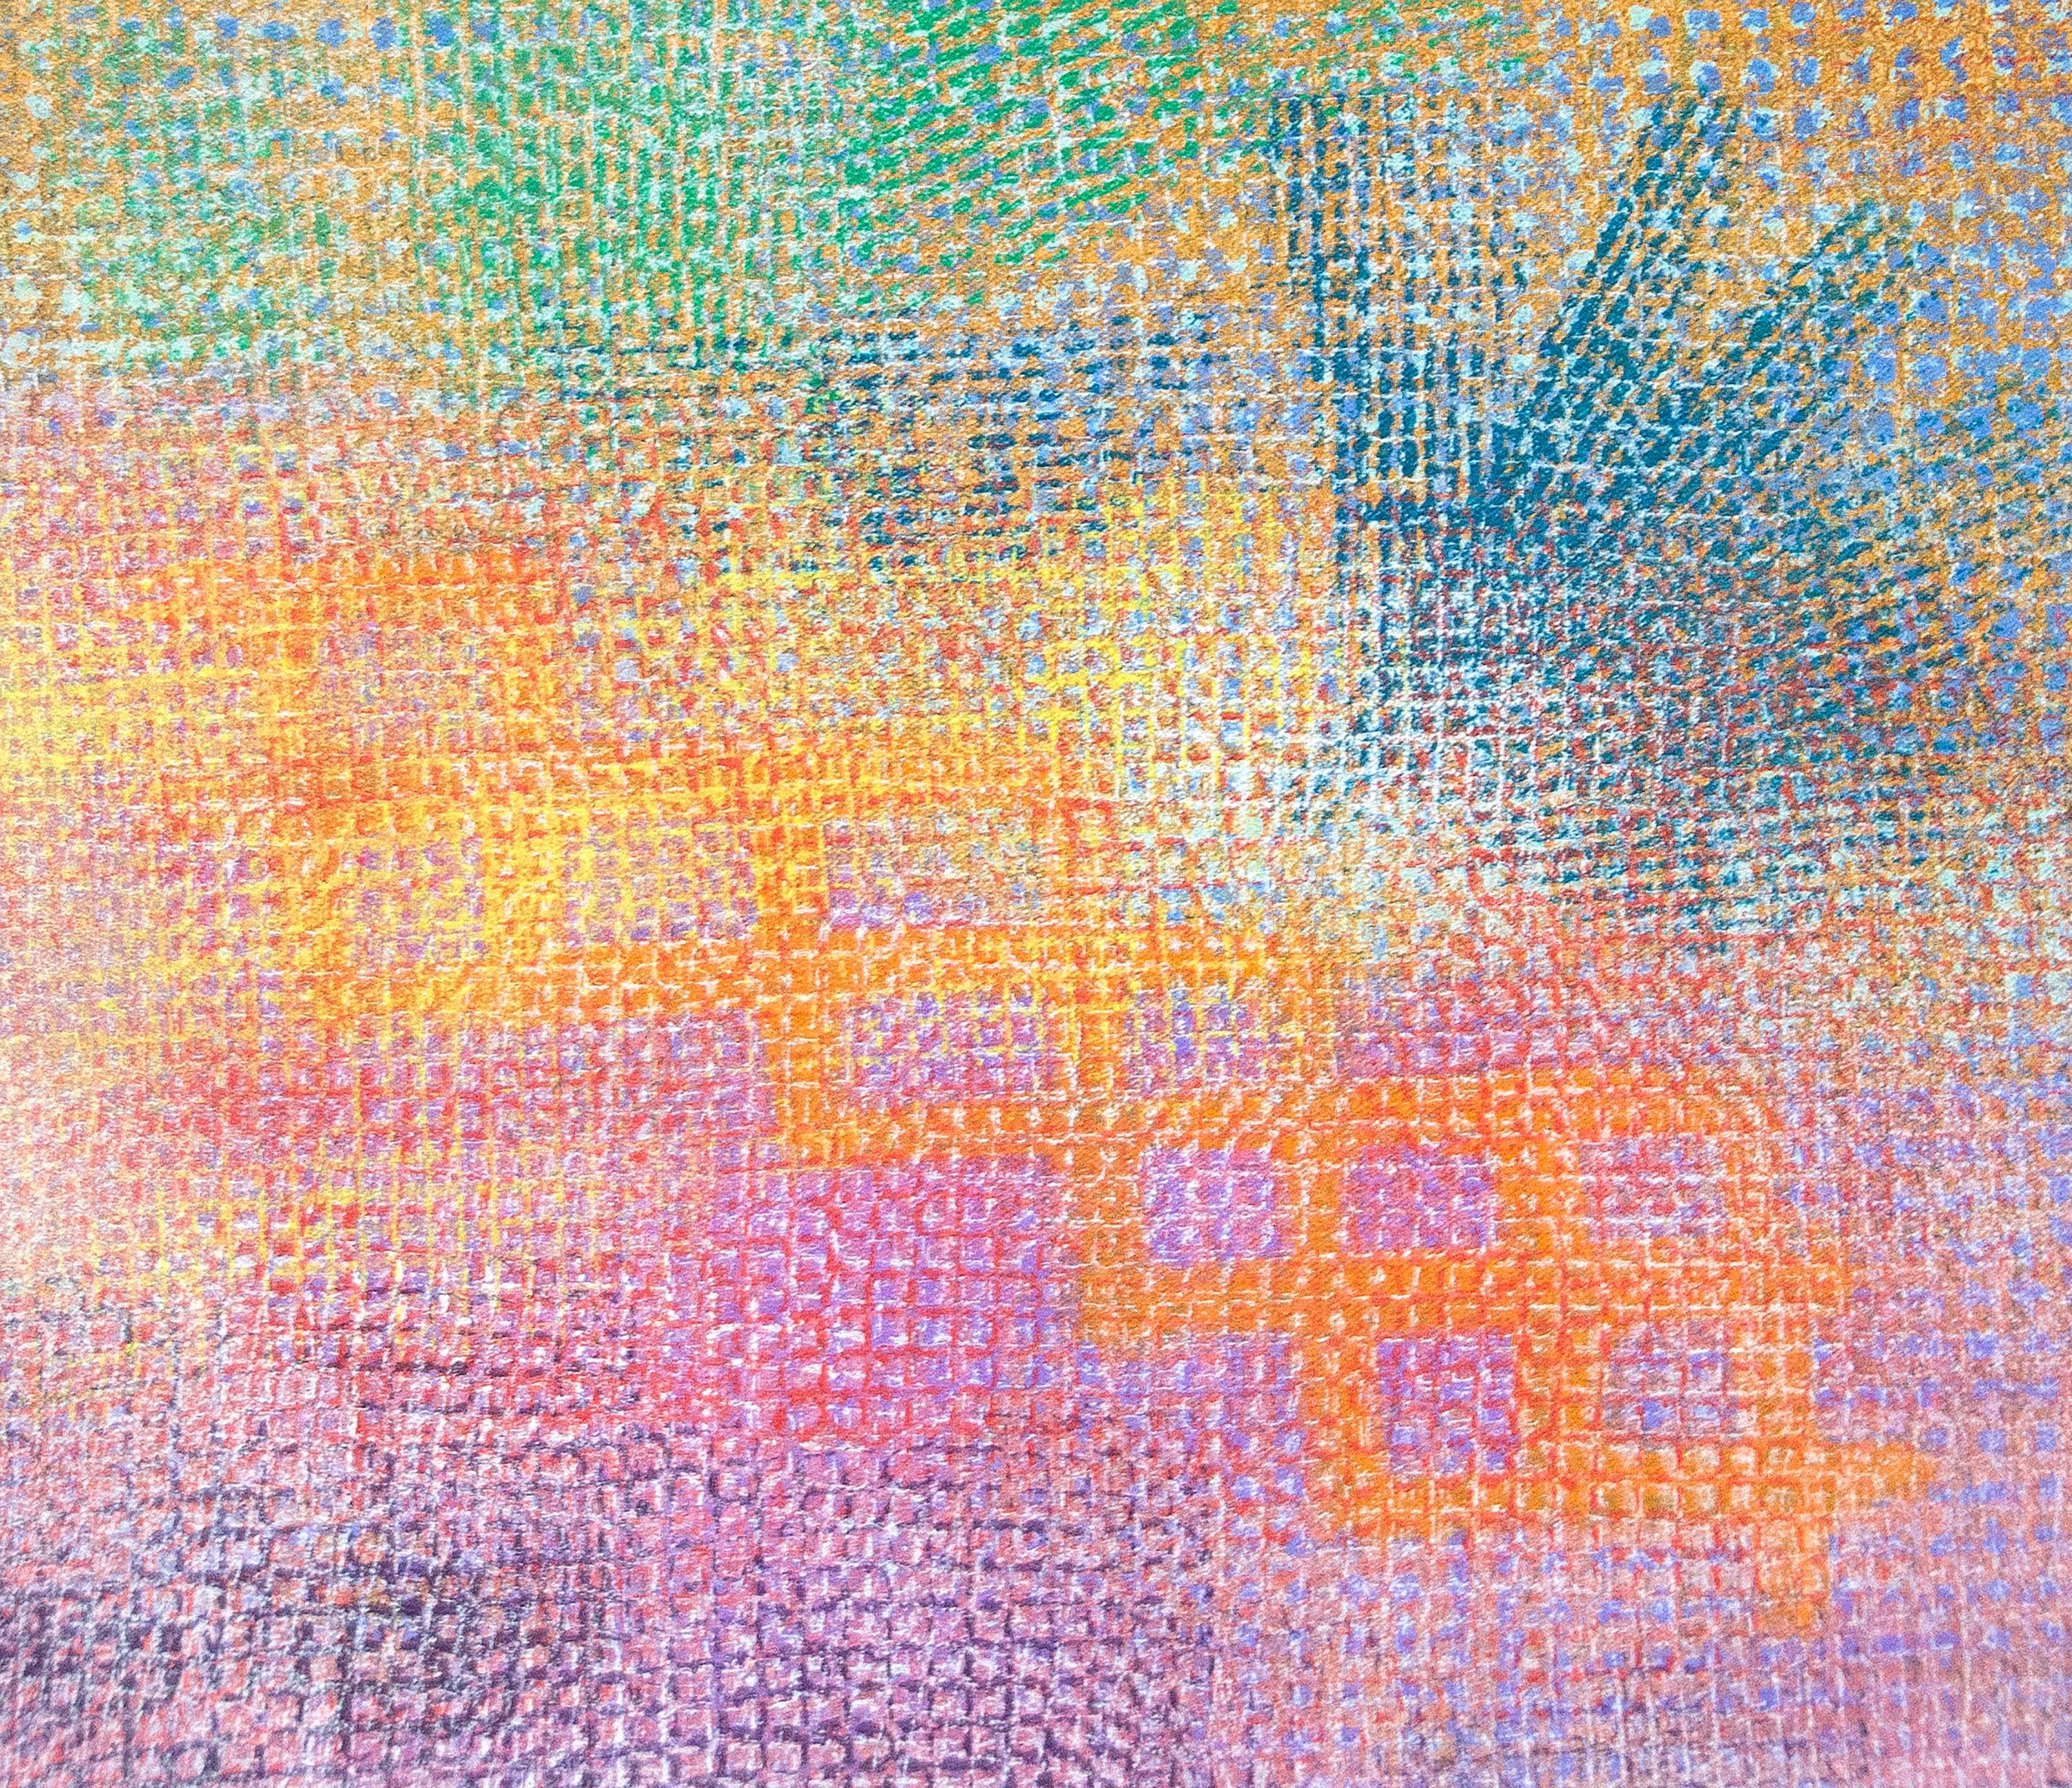 Une peinture acrylique sur toile de l'artiste d'après-guerre Robert Natkin. Cette peinture abstraite sans titre est exécutée en fines couches de peinture acrylique de couleur violette, orange, jaune, bleu sarcelle, ocre et verte. Signé en bas à